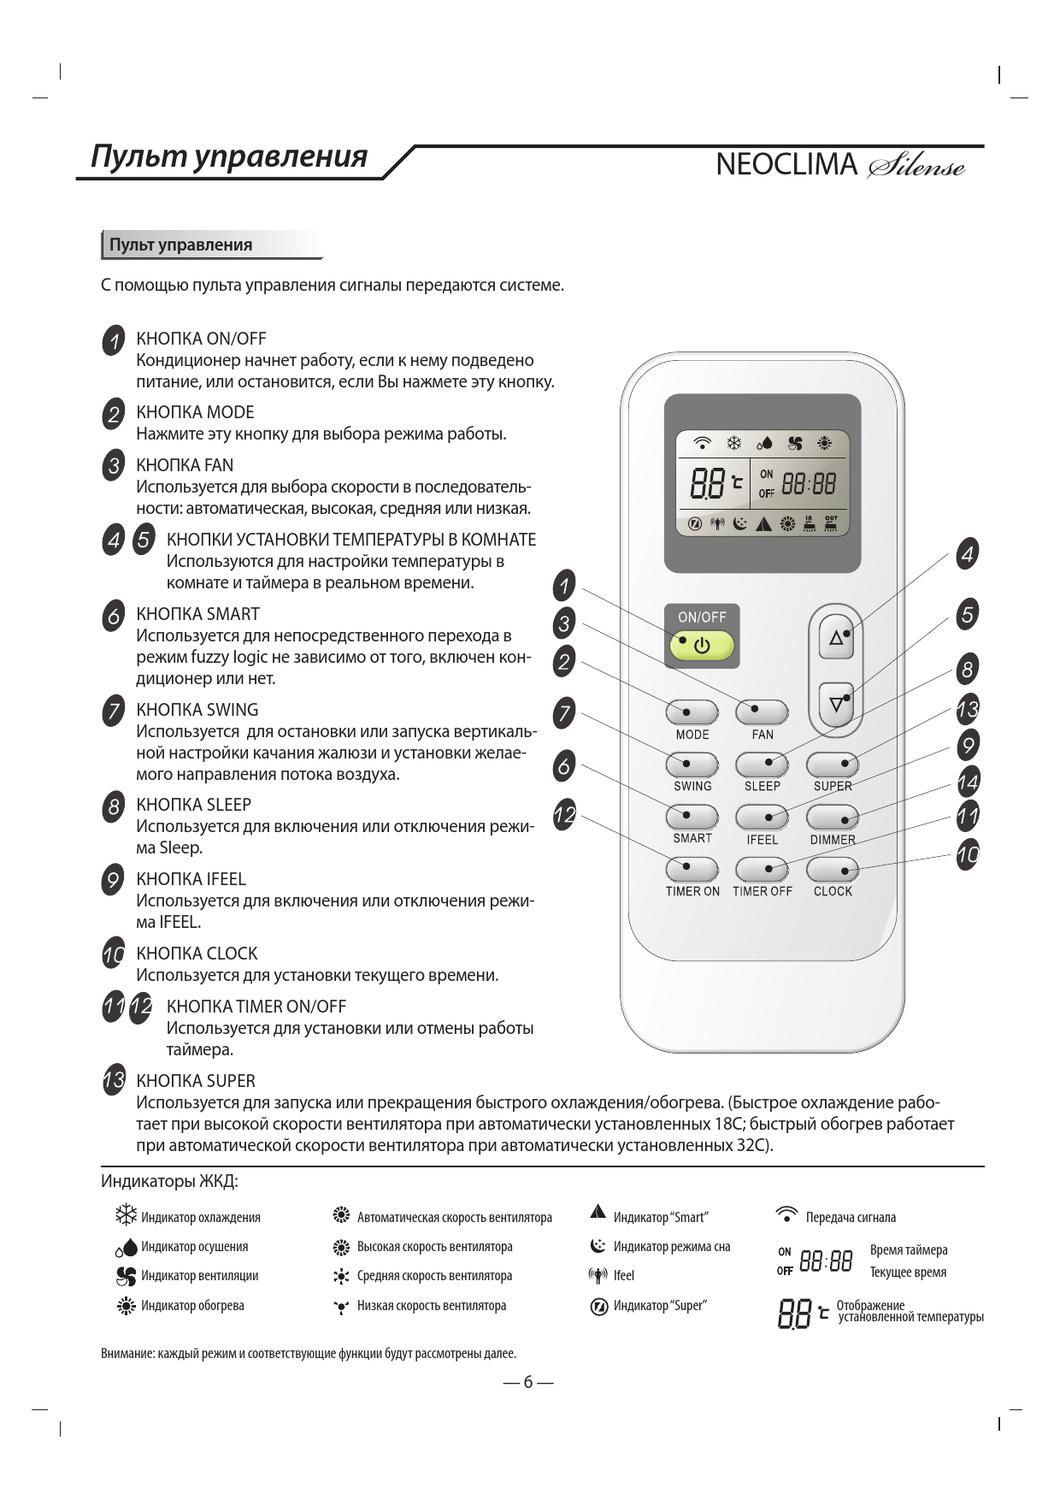 Обзор кондиционеров Roda: мобильные и настенные модели, их сравнение, характеристики и инструкции